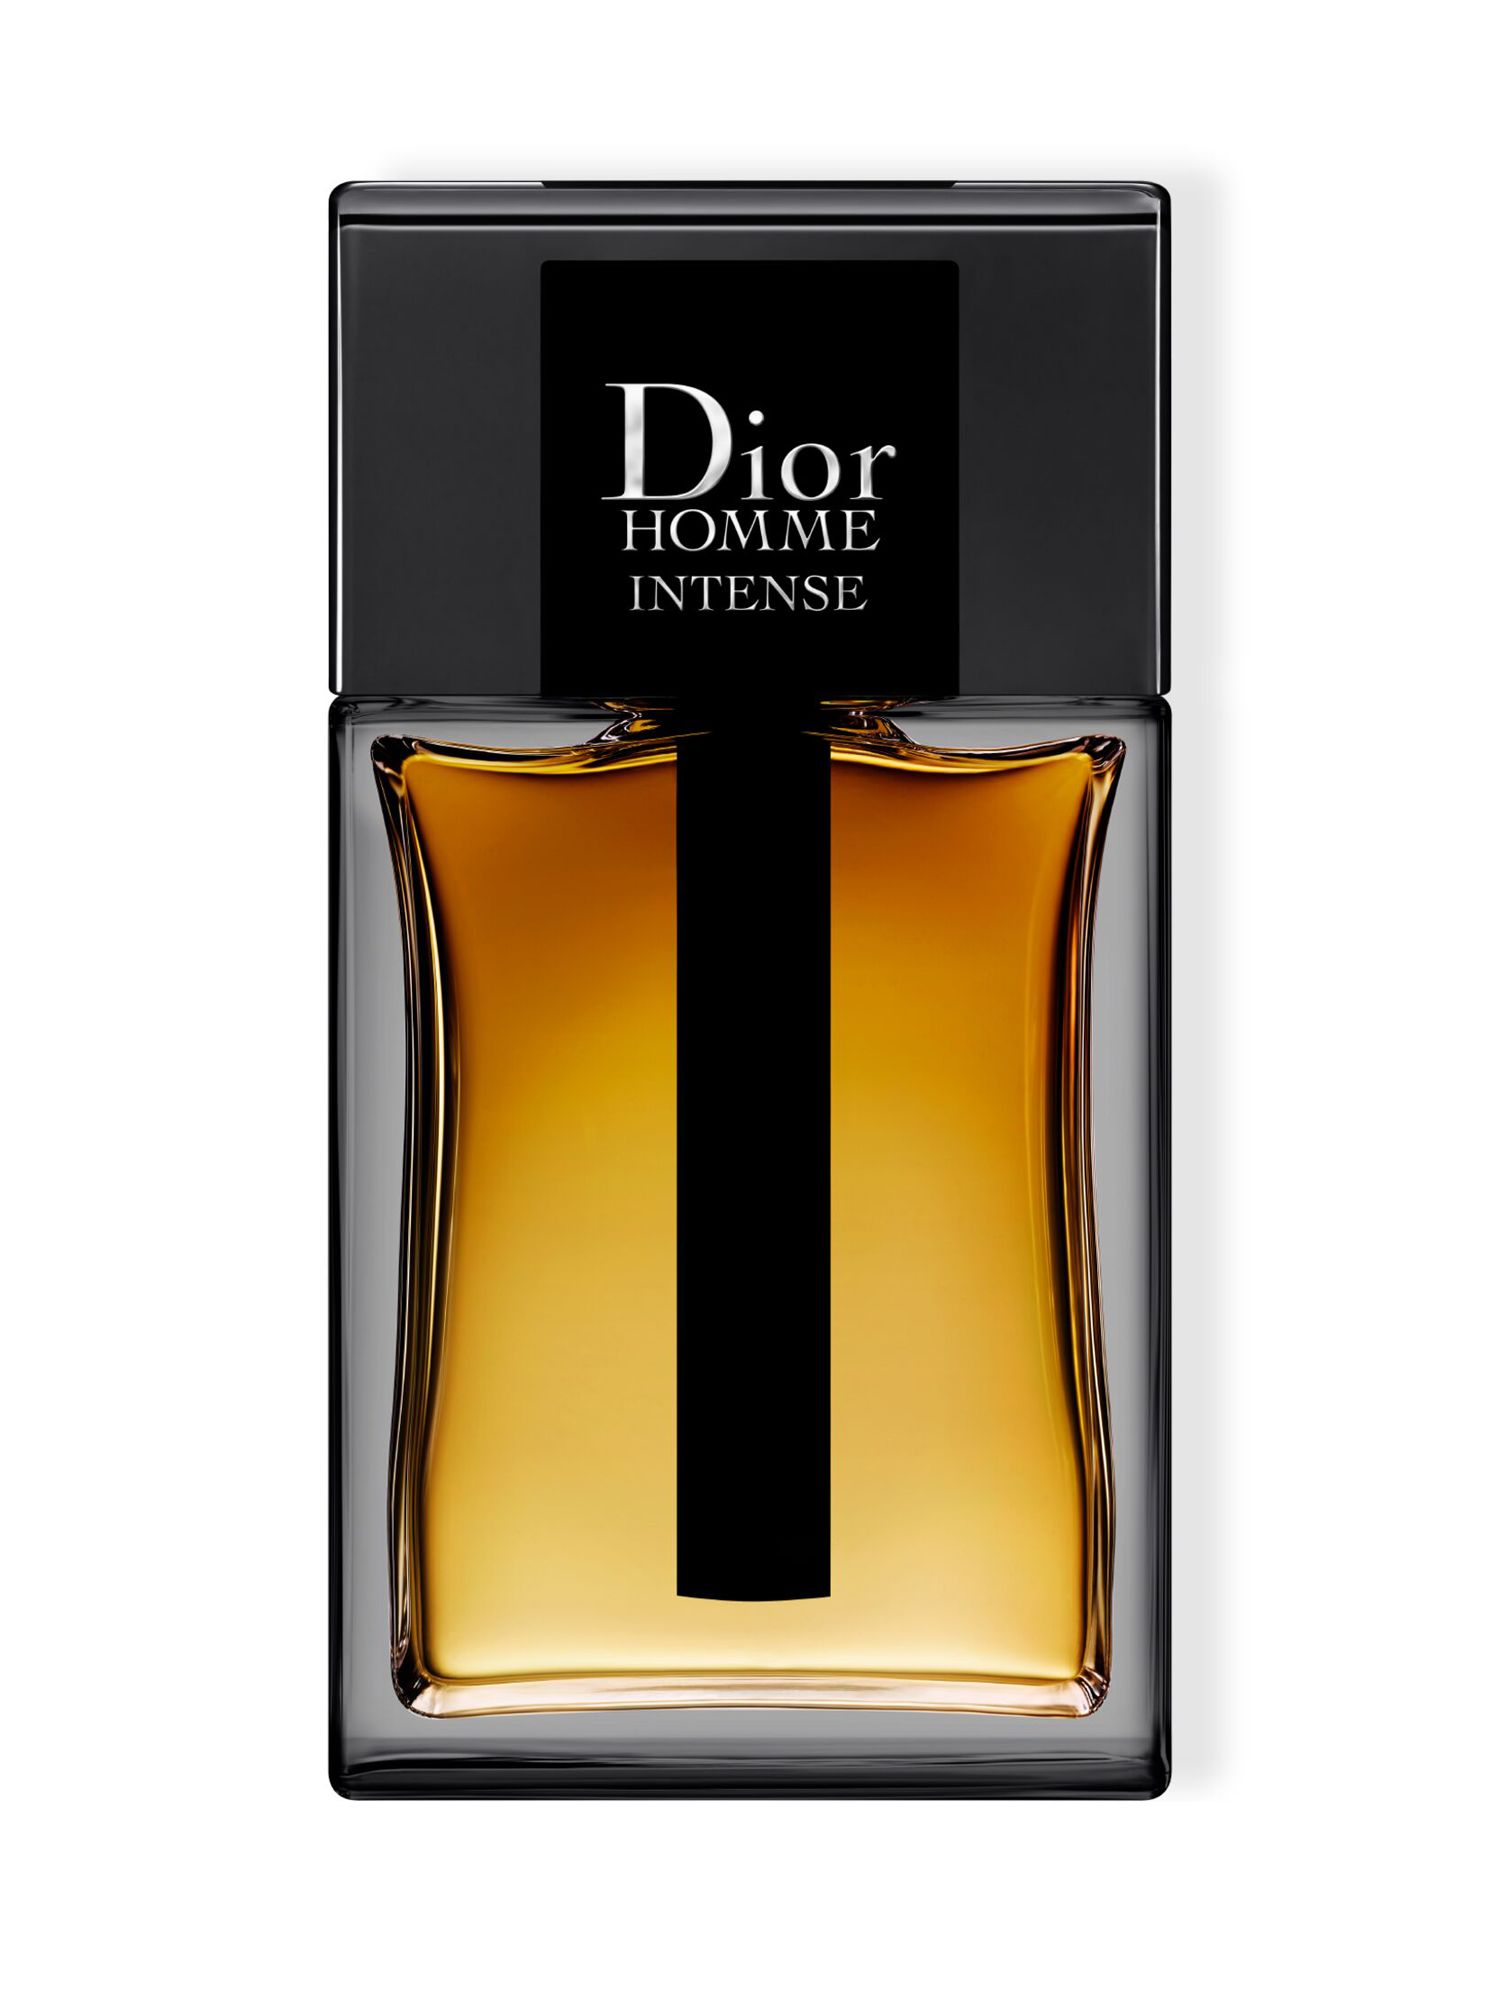 Dior Homme Intense Eau de Parfum at 